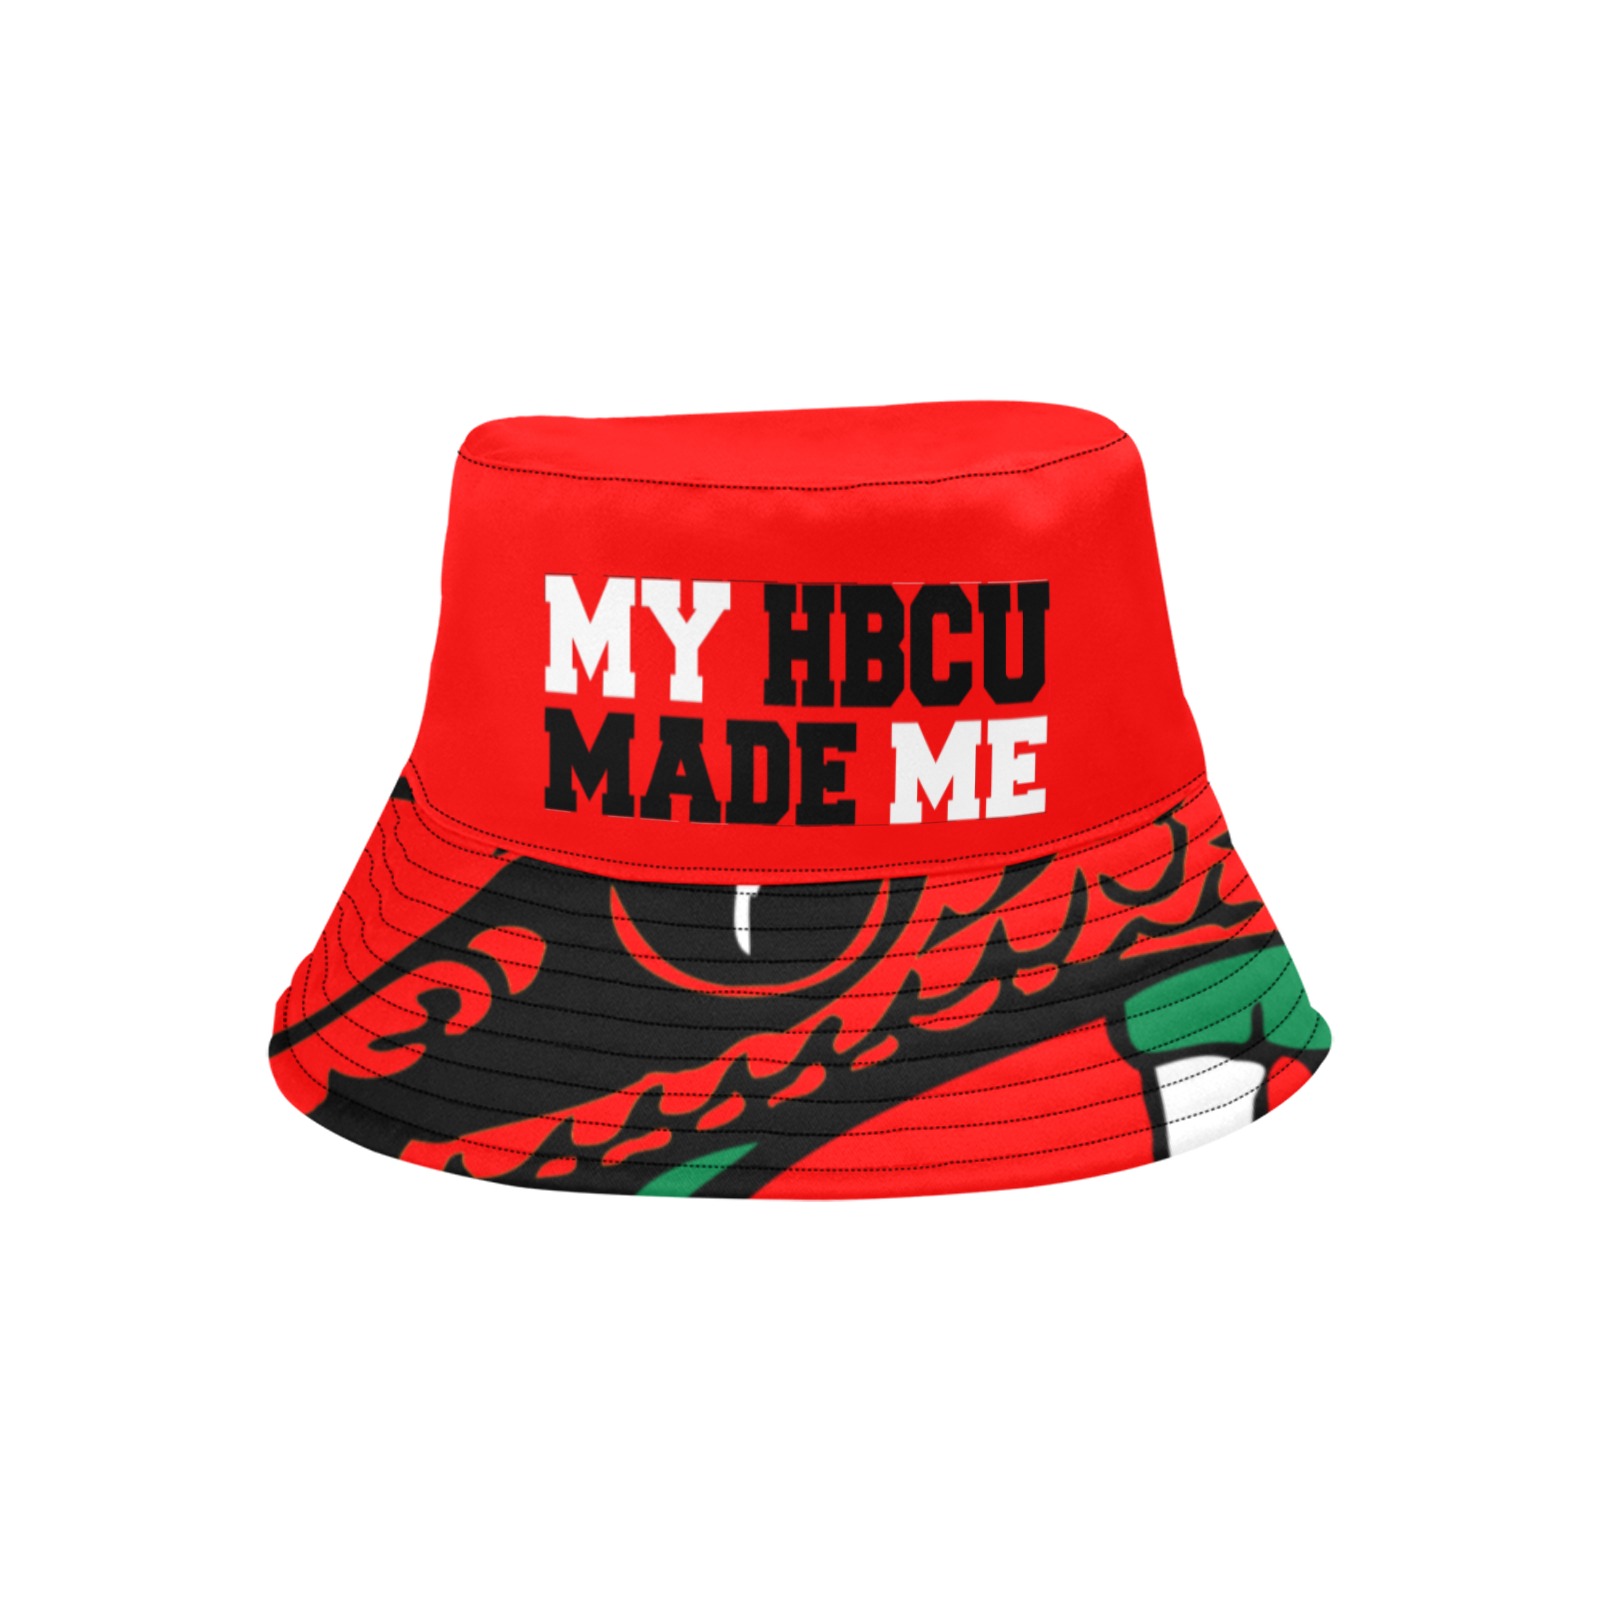 My HBCU MADE ME Red Bucket Unisex Summer Bucket Hat